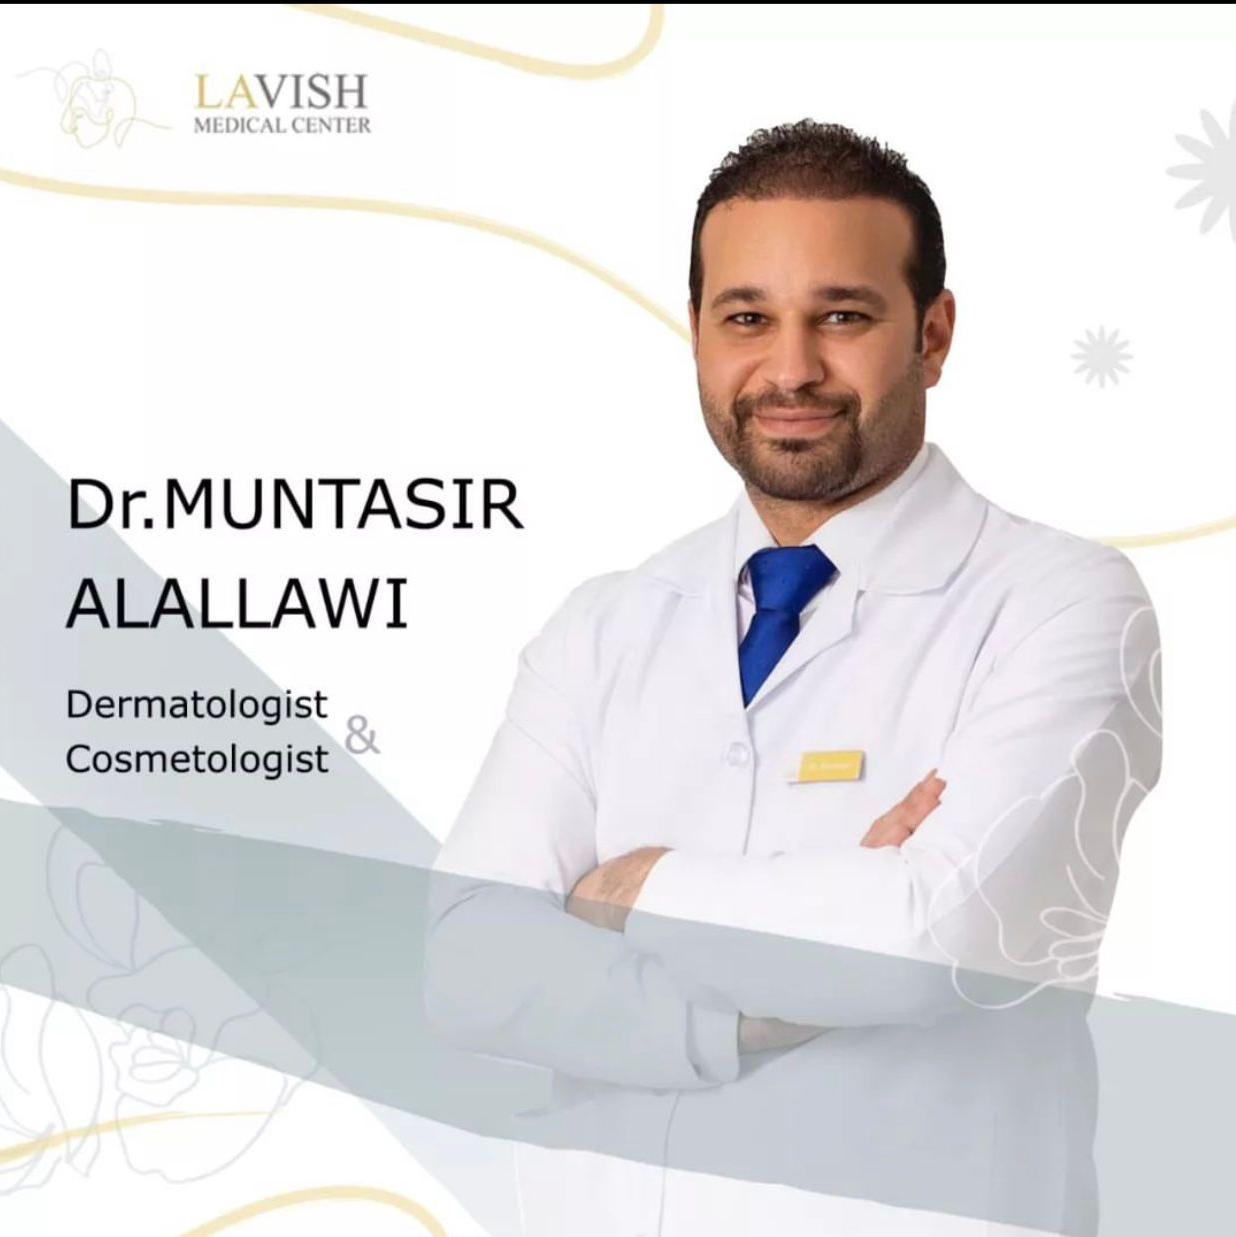 Dr. Muntasir Al Alawi